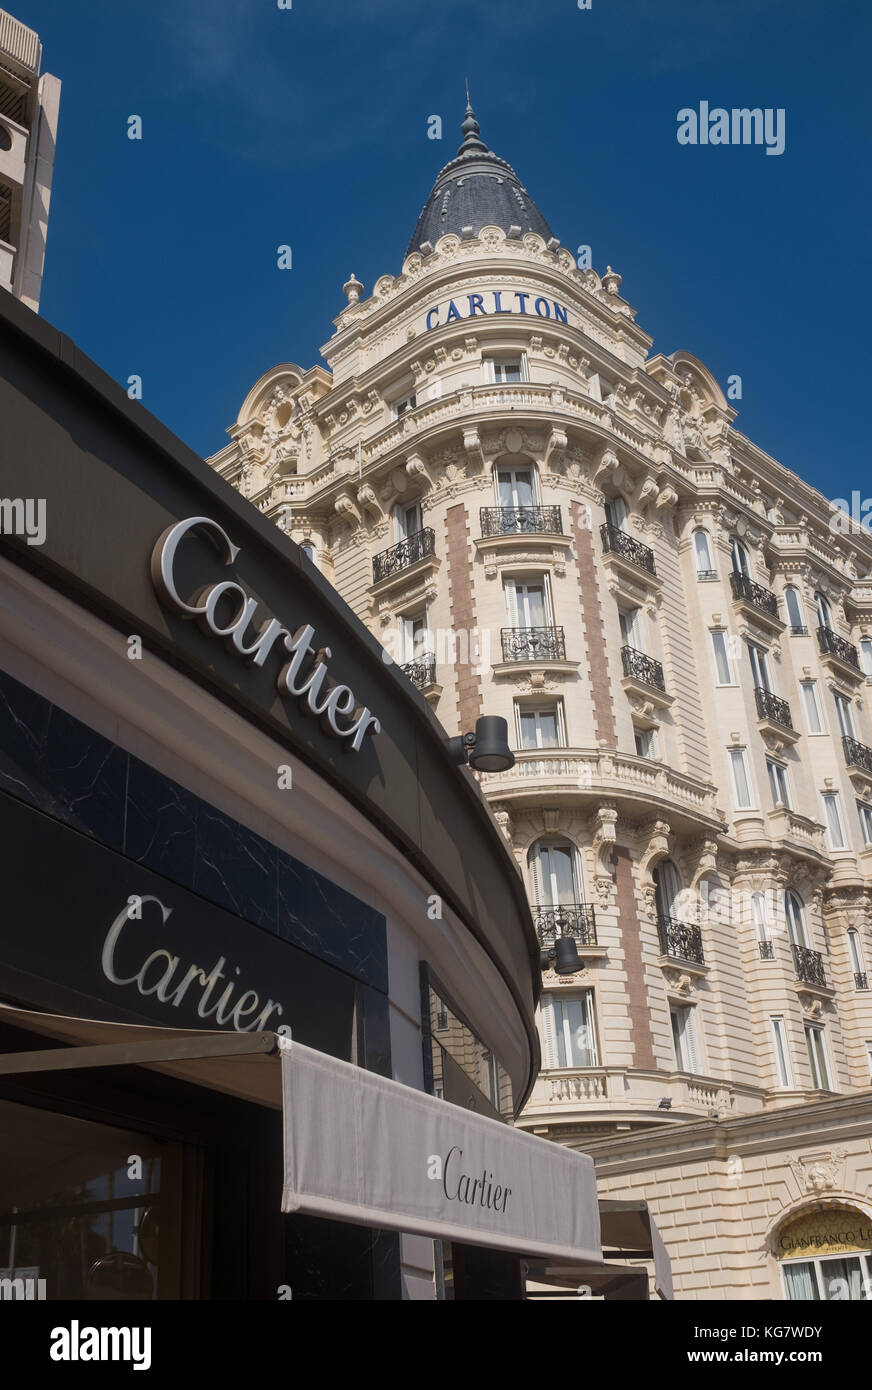 Cartier Sign Banque d'image et photos - Alamy